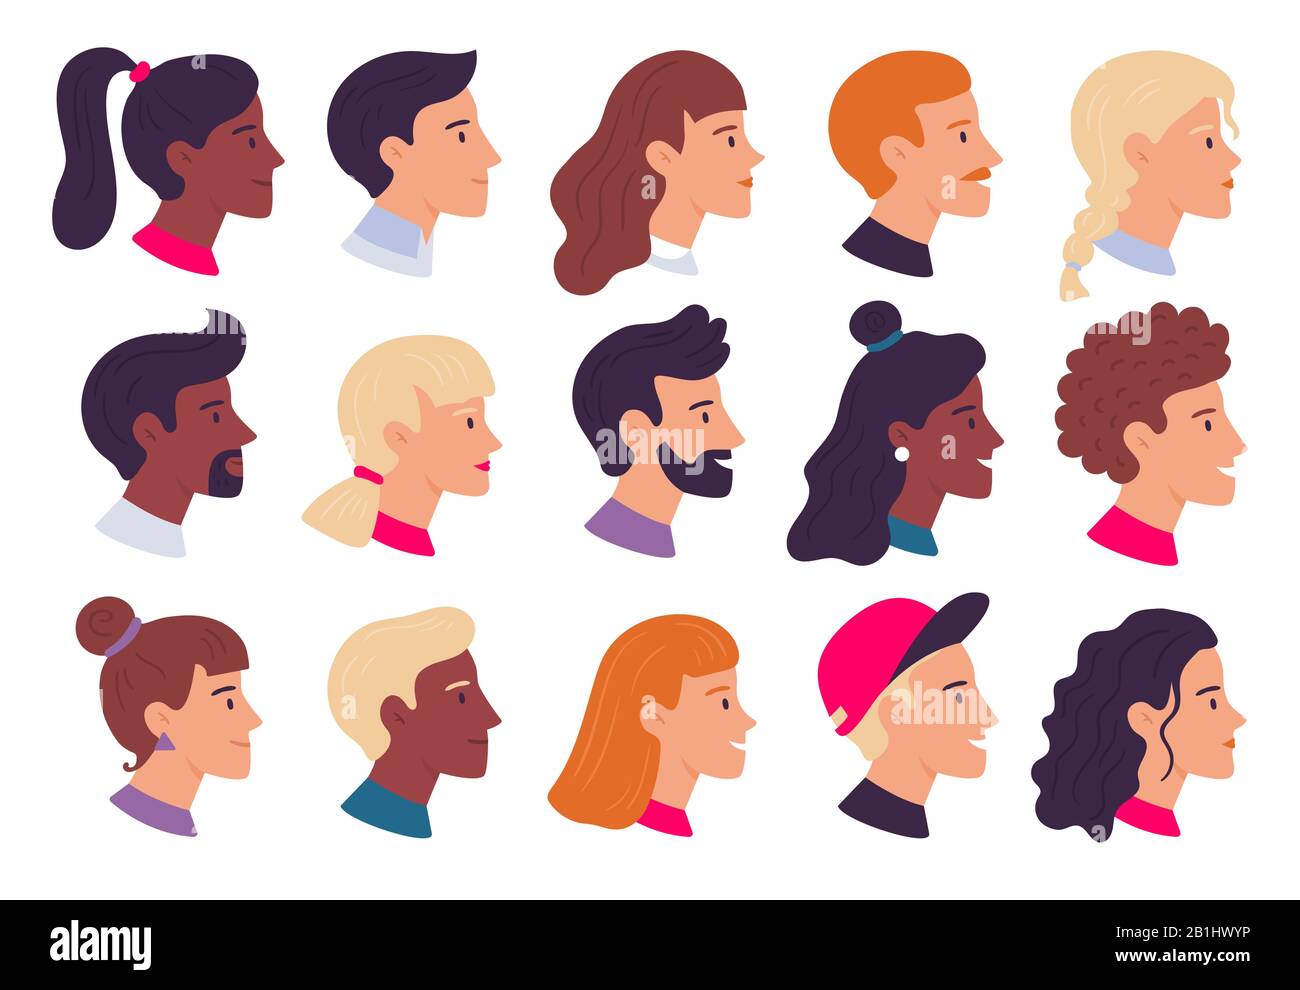 Profil des portraits de personnes. Avatars de profils de visage mâles et femelles, jeu d'illustrations vectorielles plates de portrait latéral et de têtes Illustration de Vecteur